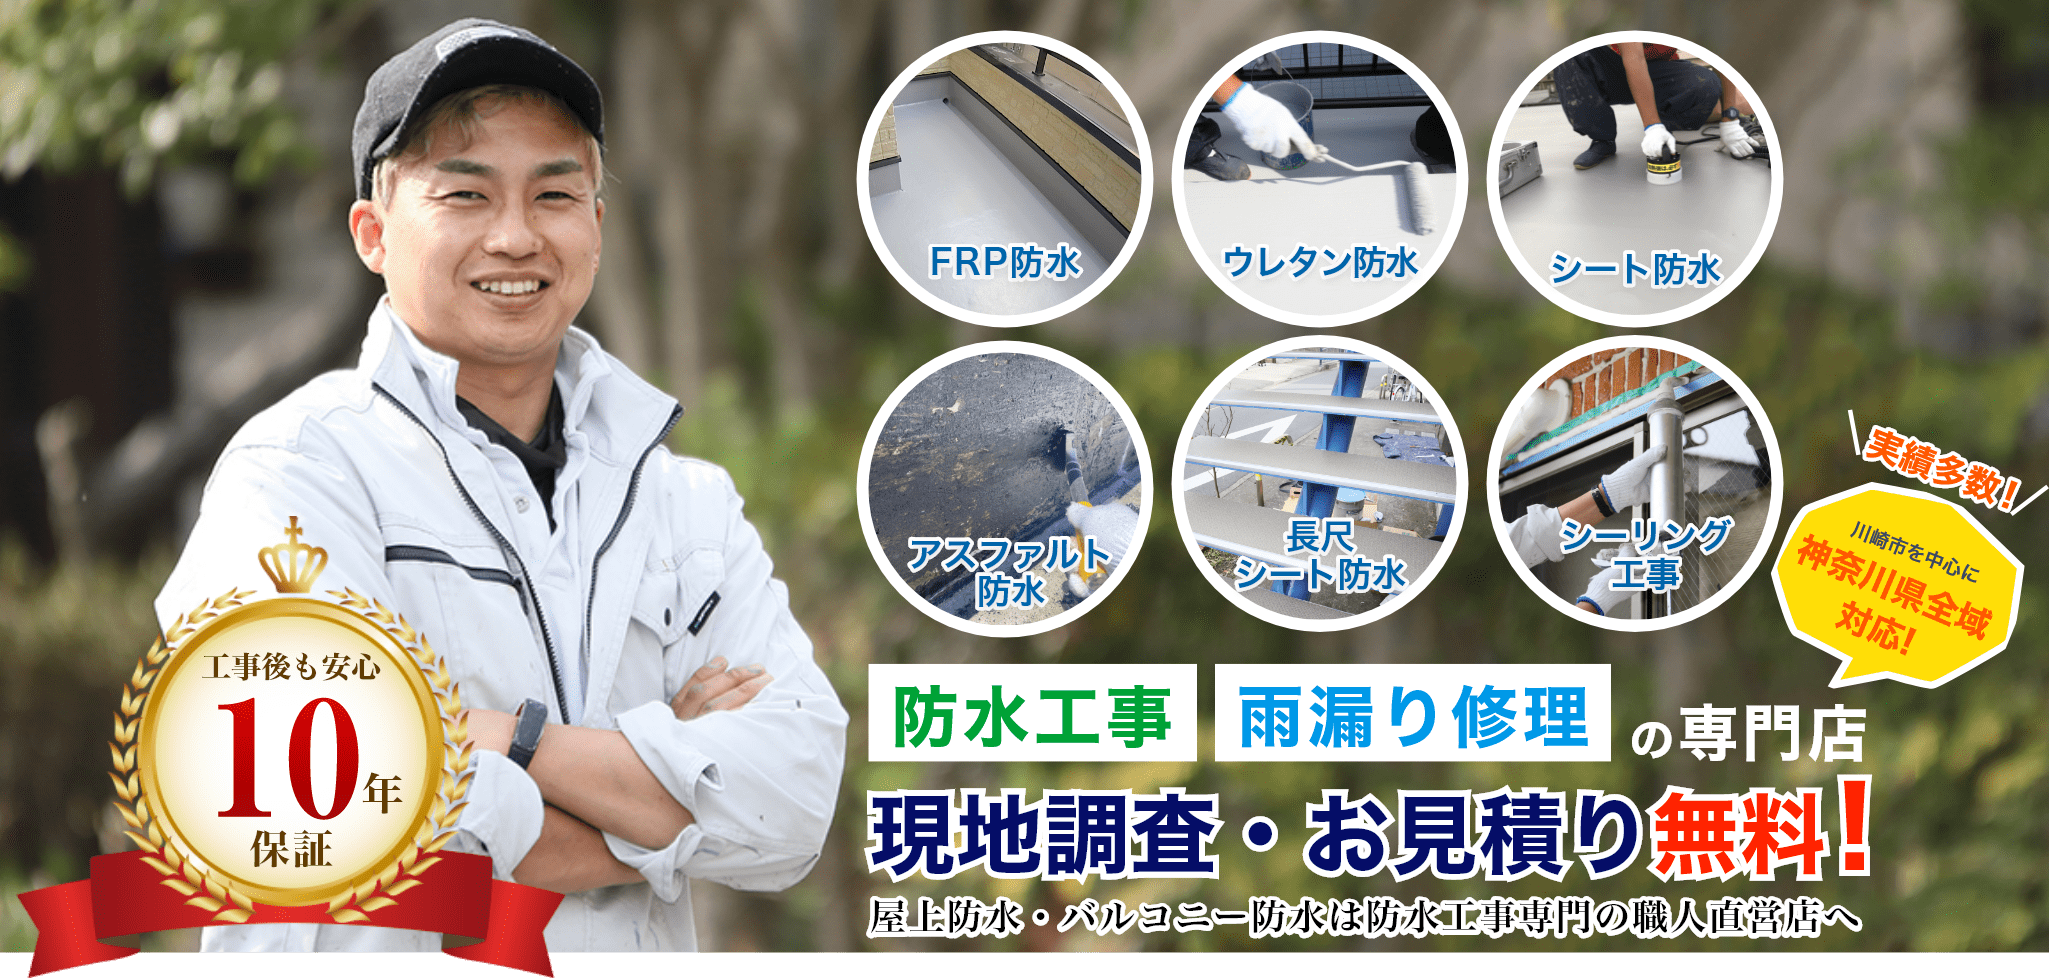 川崎市の防水工事・屋上防水・バルコニー防水はRAINBOW株式会社